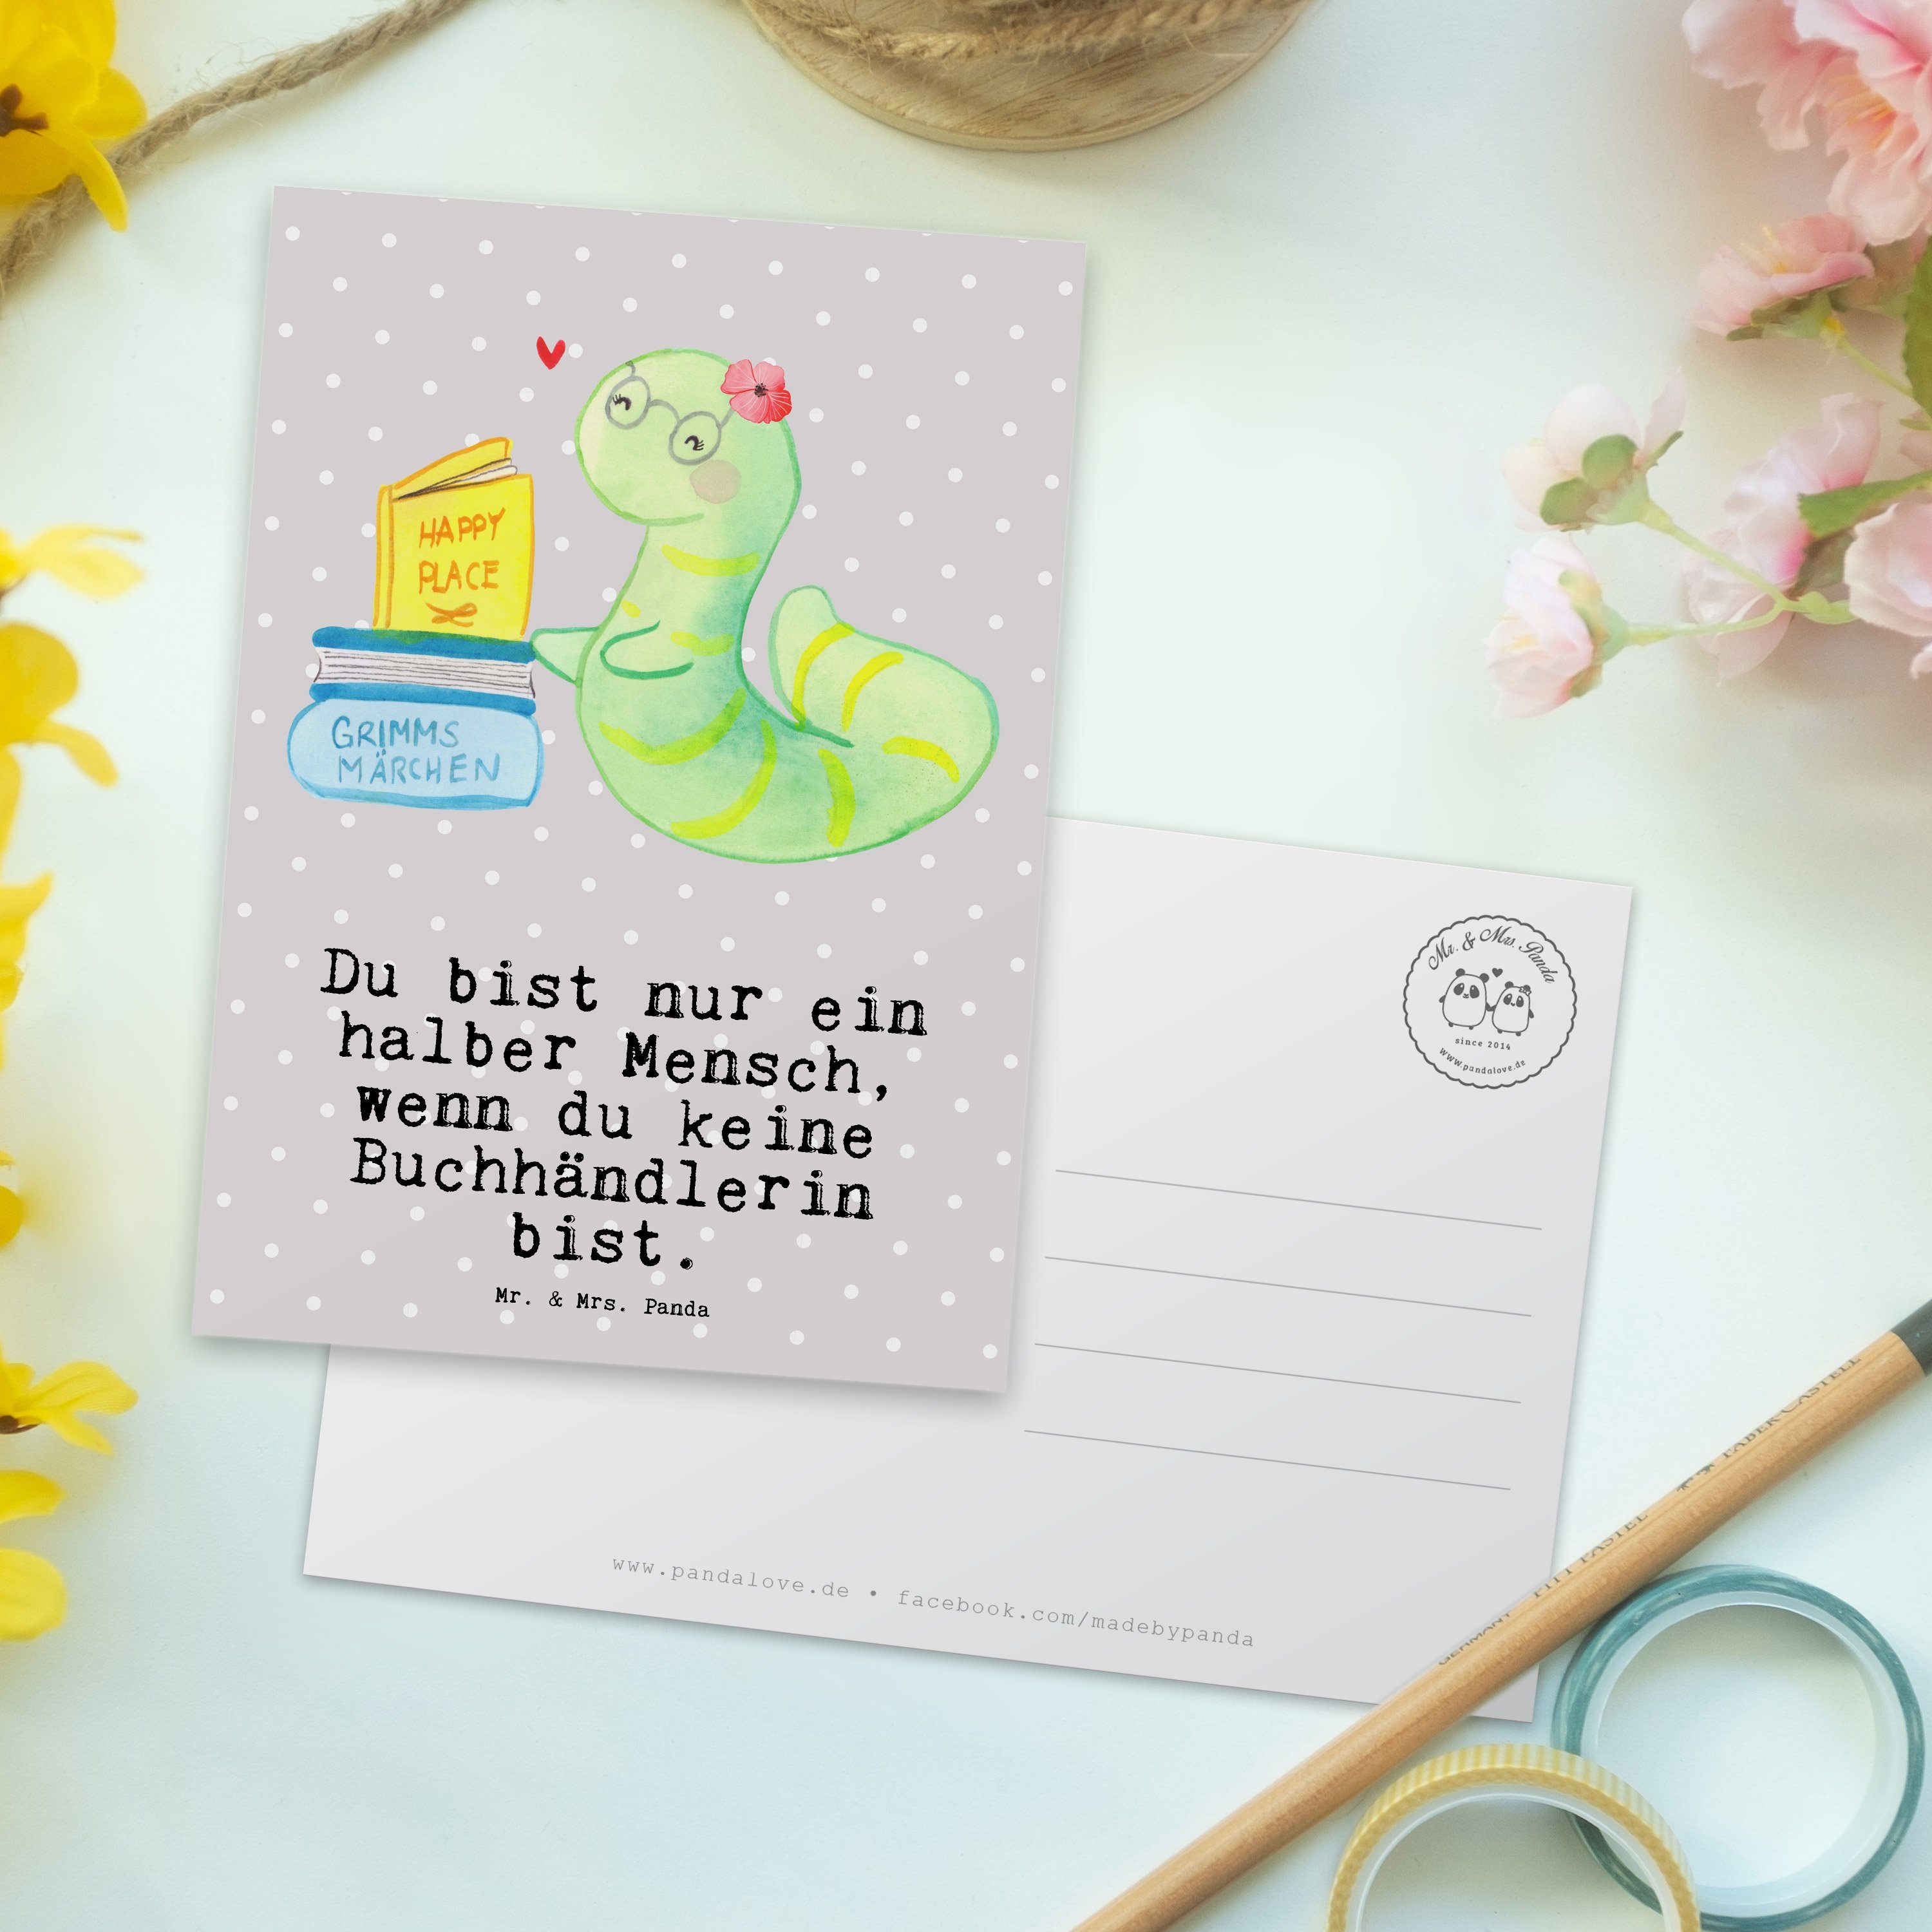 Mr. & - mit Pastell - Bibliot Panda Geschenk, Herz Grau Postkarte Mrs. Buchhändlerin Bücherwurm